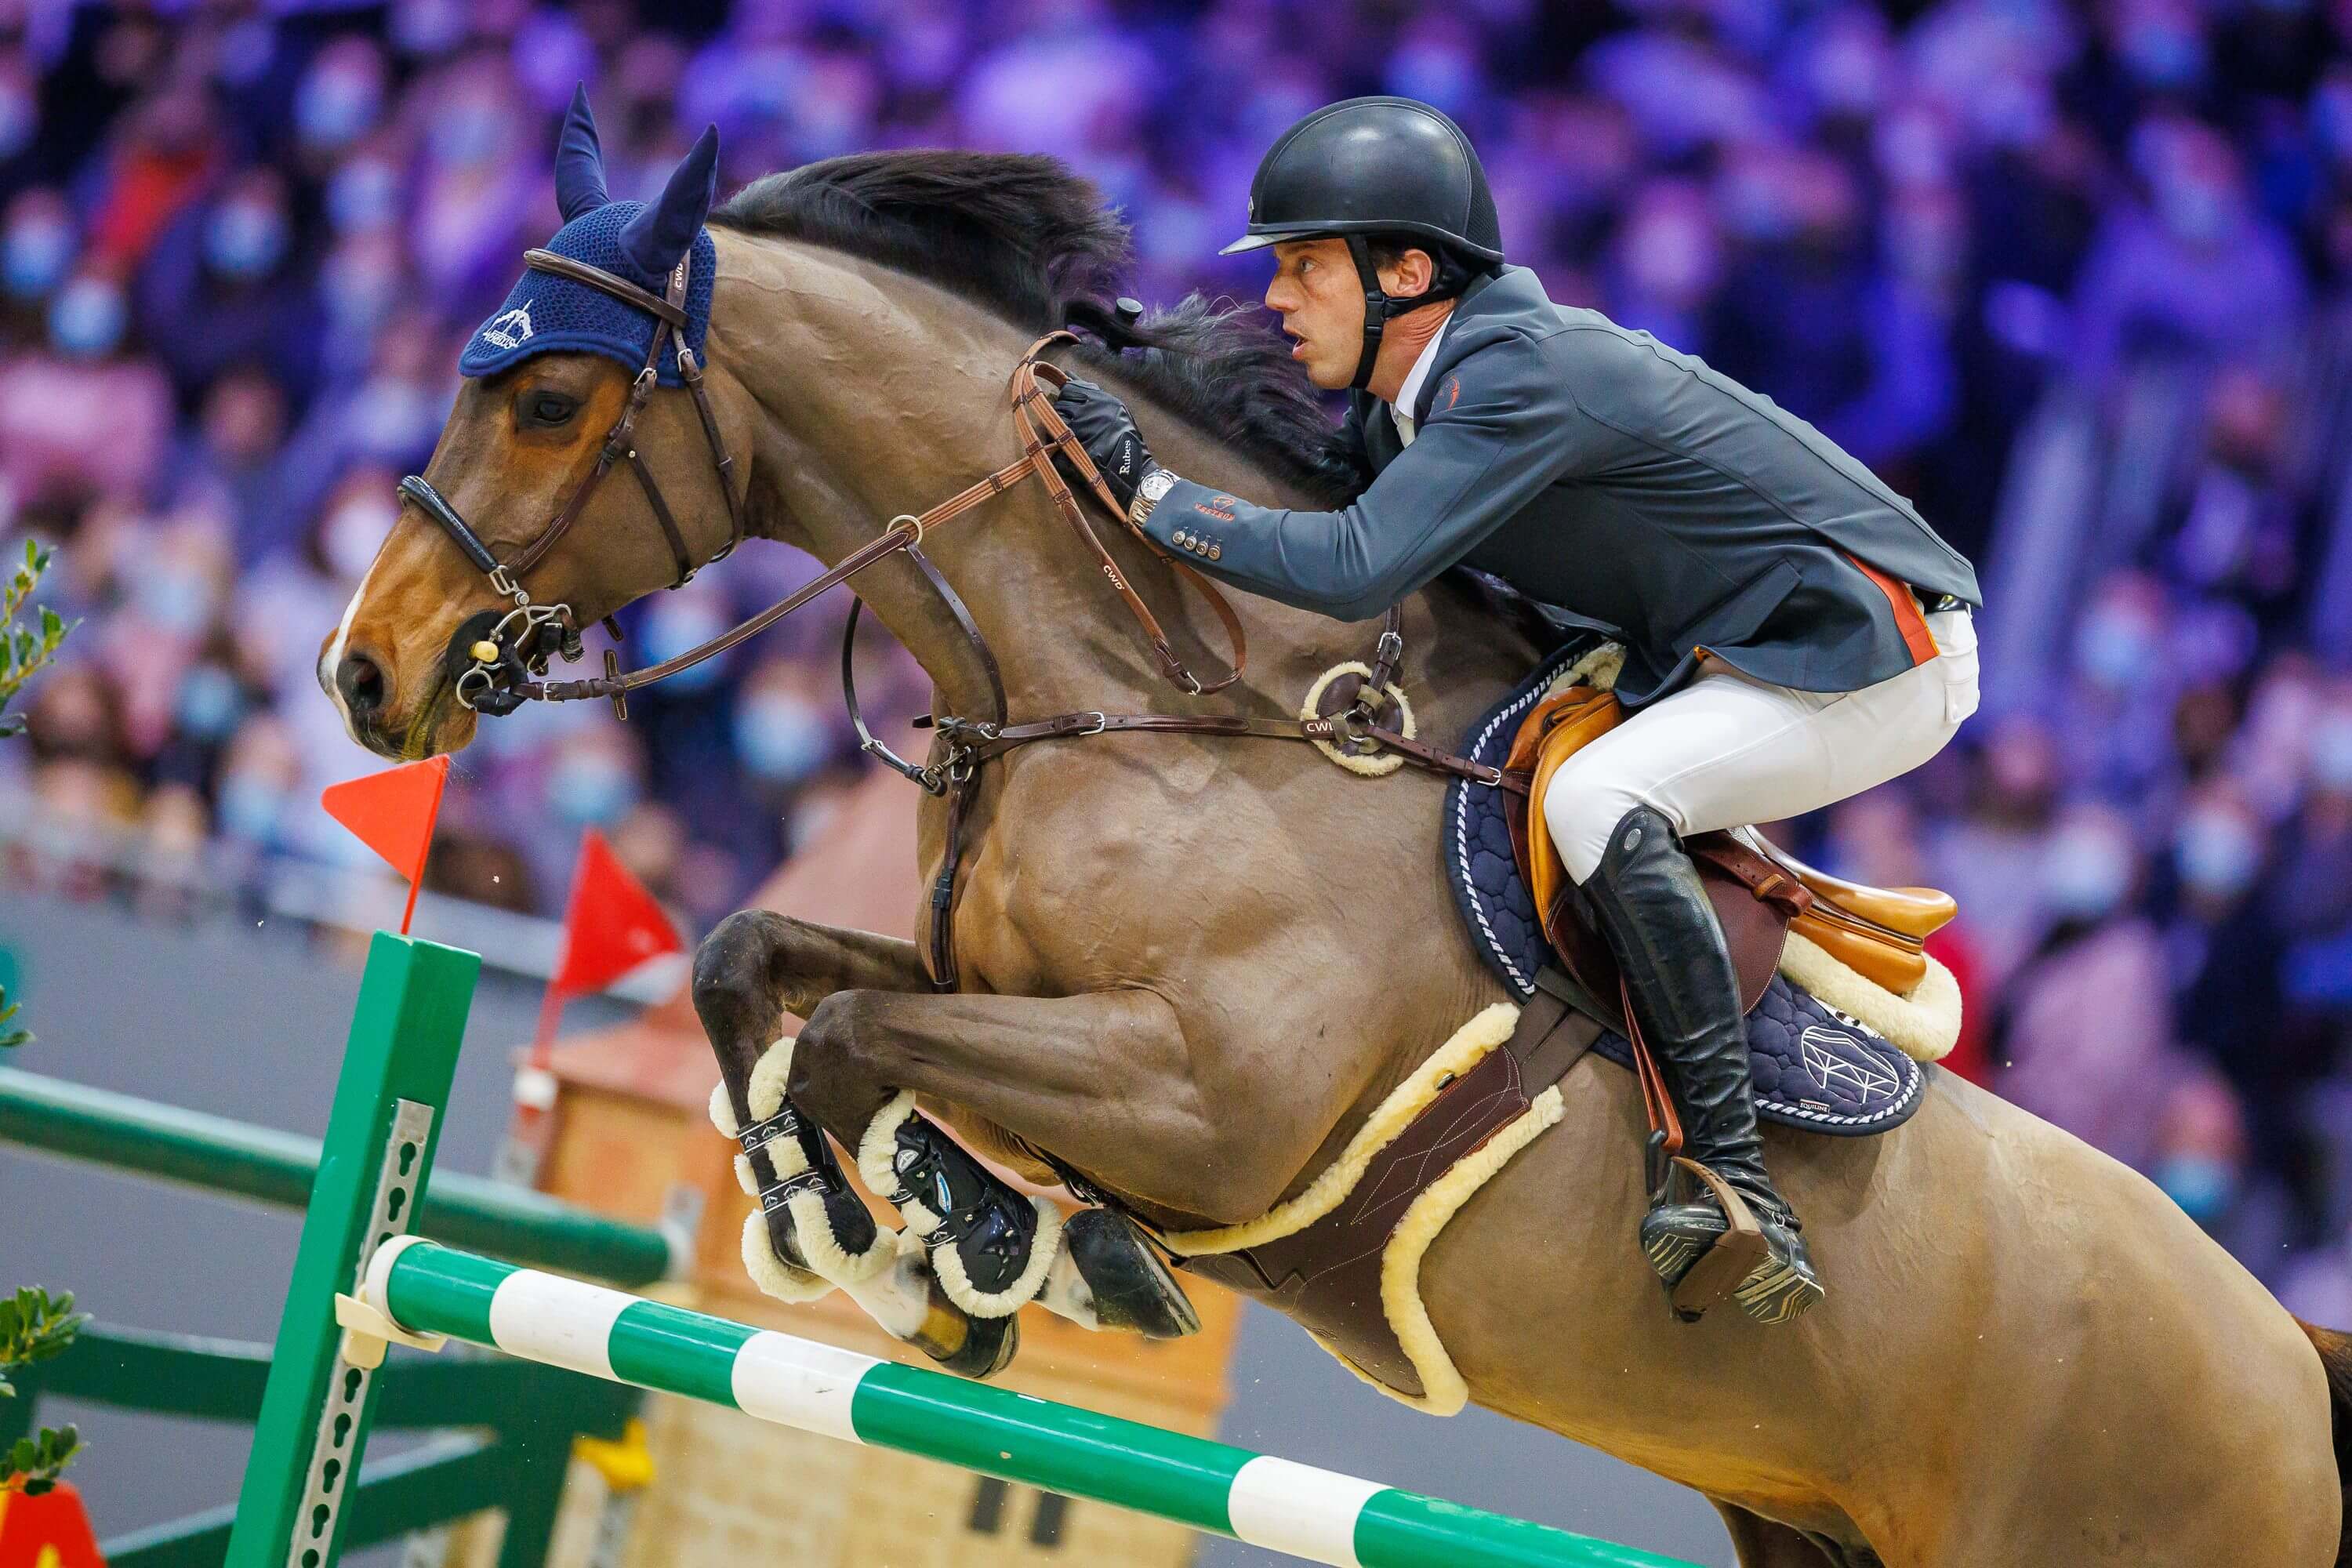 Harrie Smolders' Monaco is nummer één springpaard van de wereld